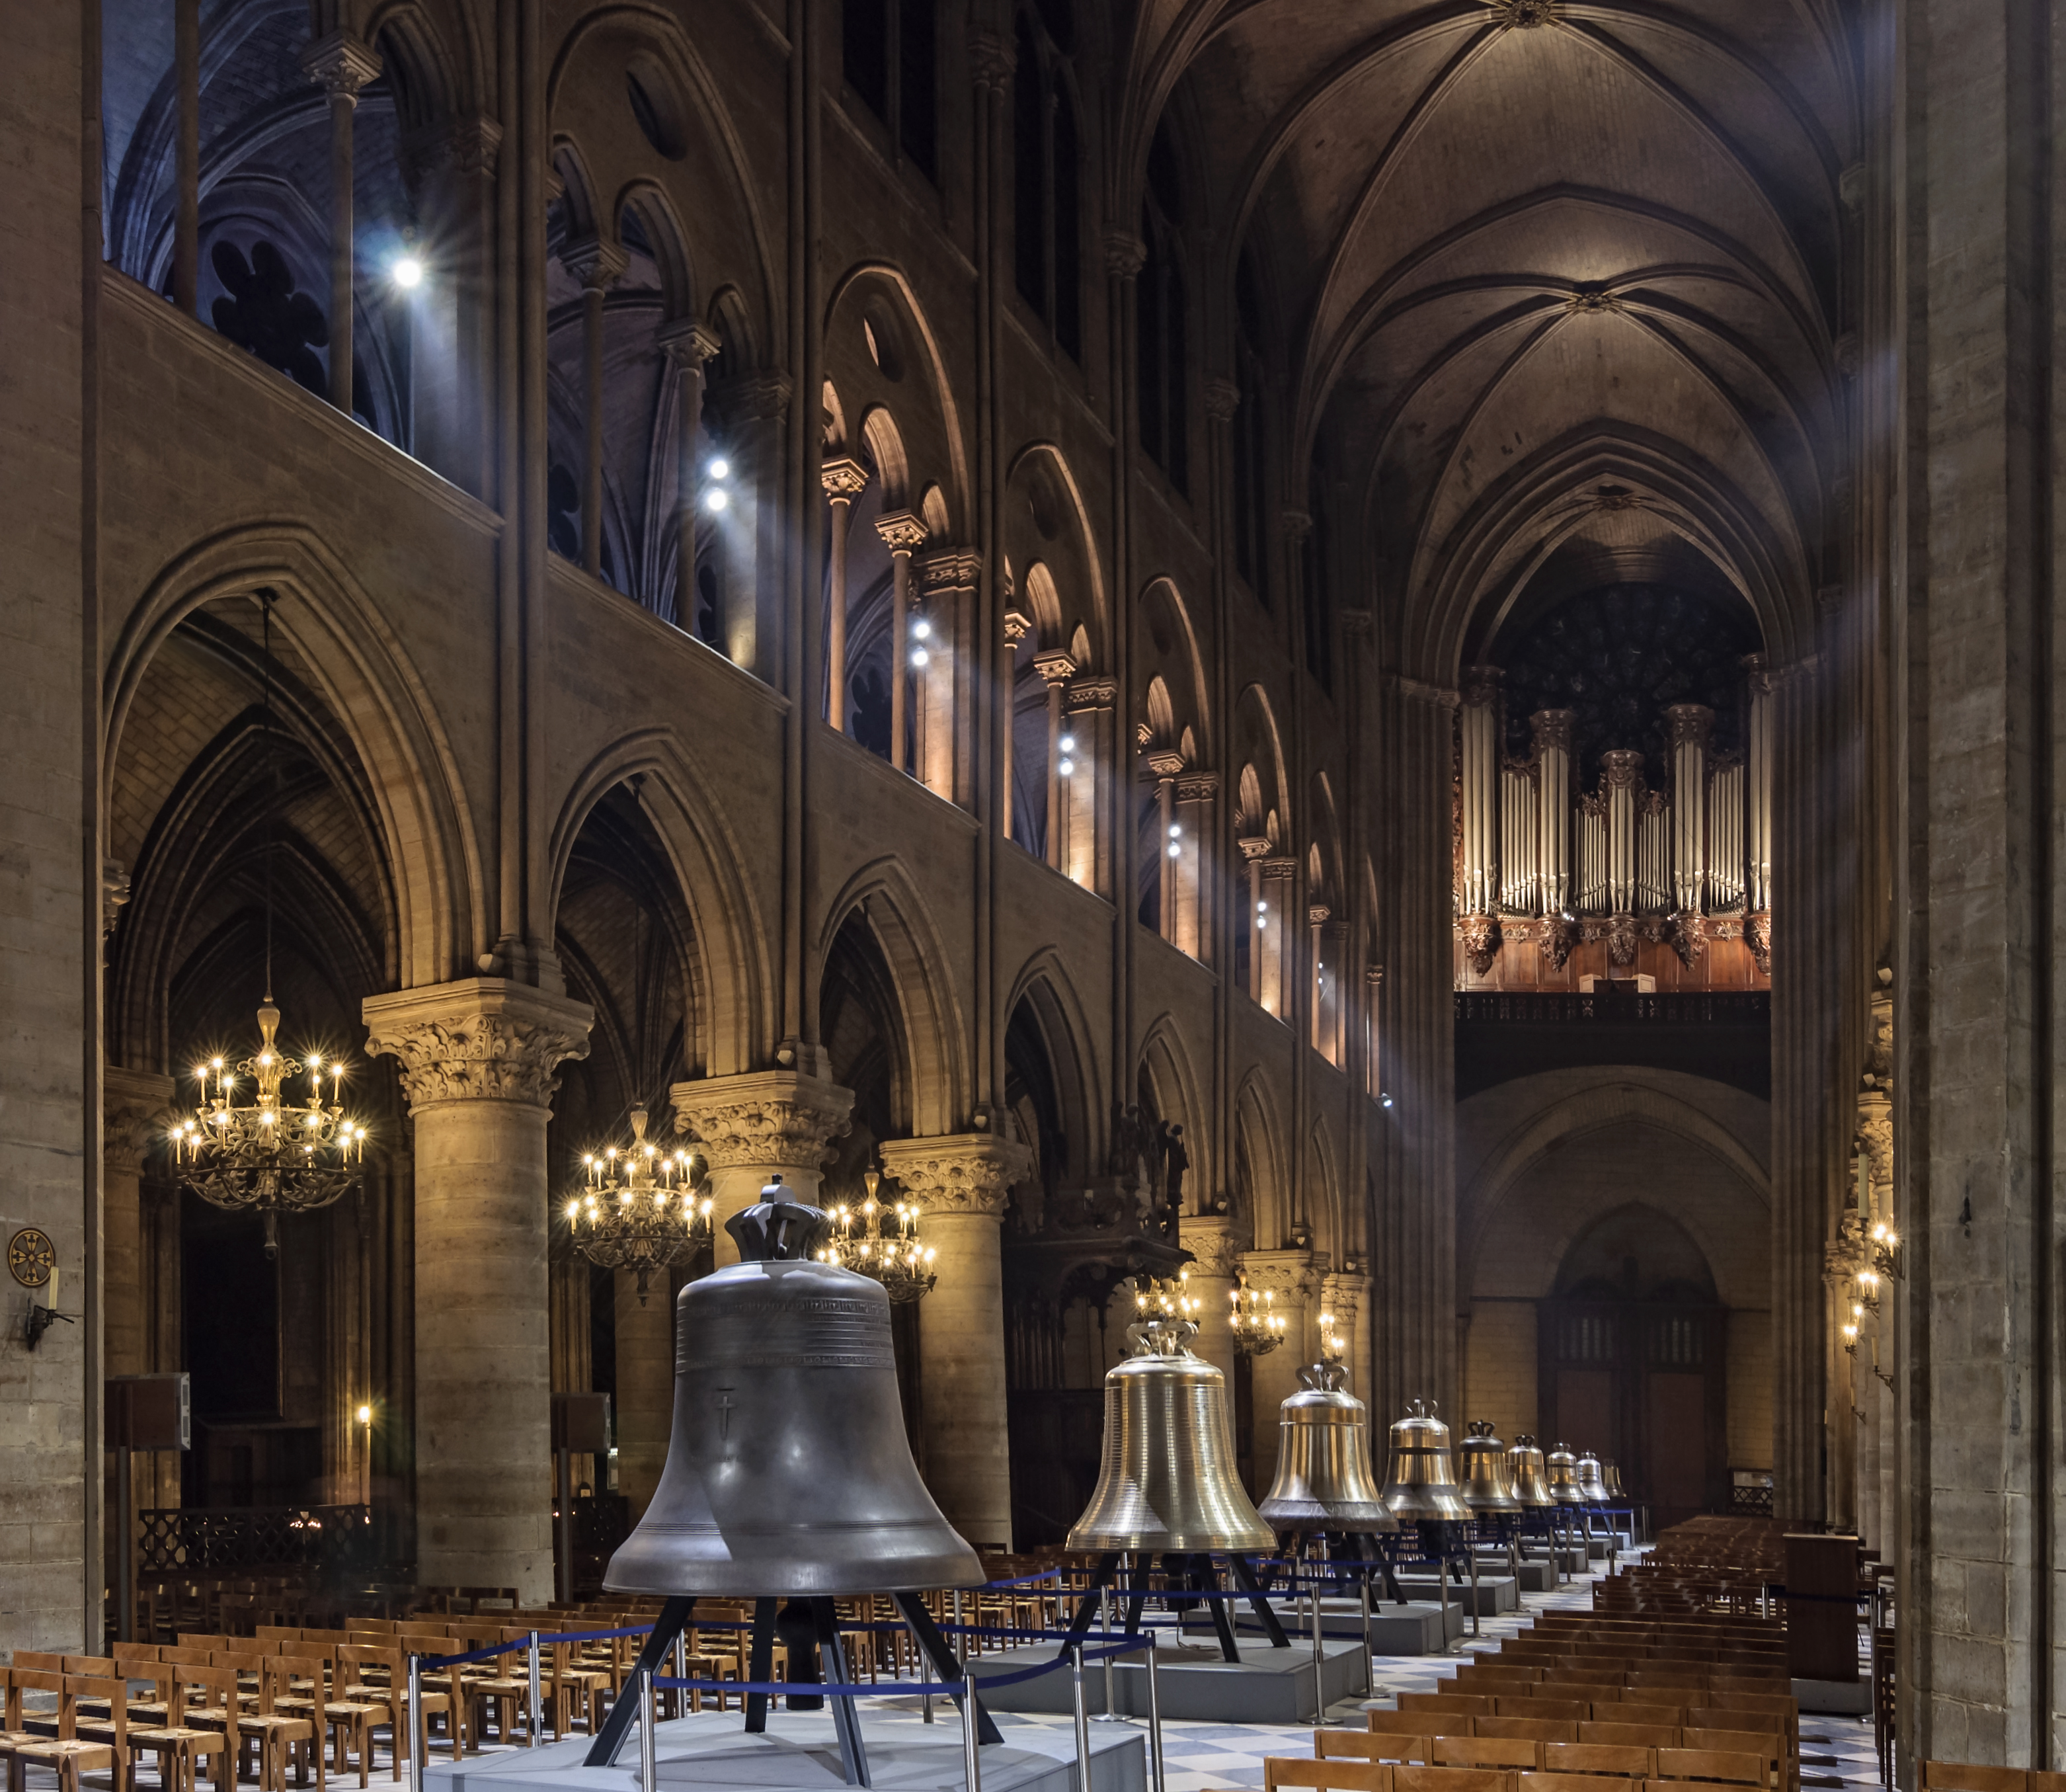 Cathedrale Notre-Dame de Paris nef nouvelles cloches